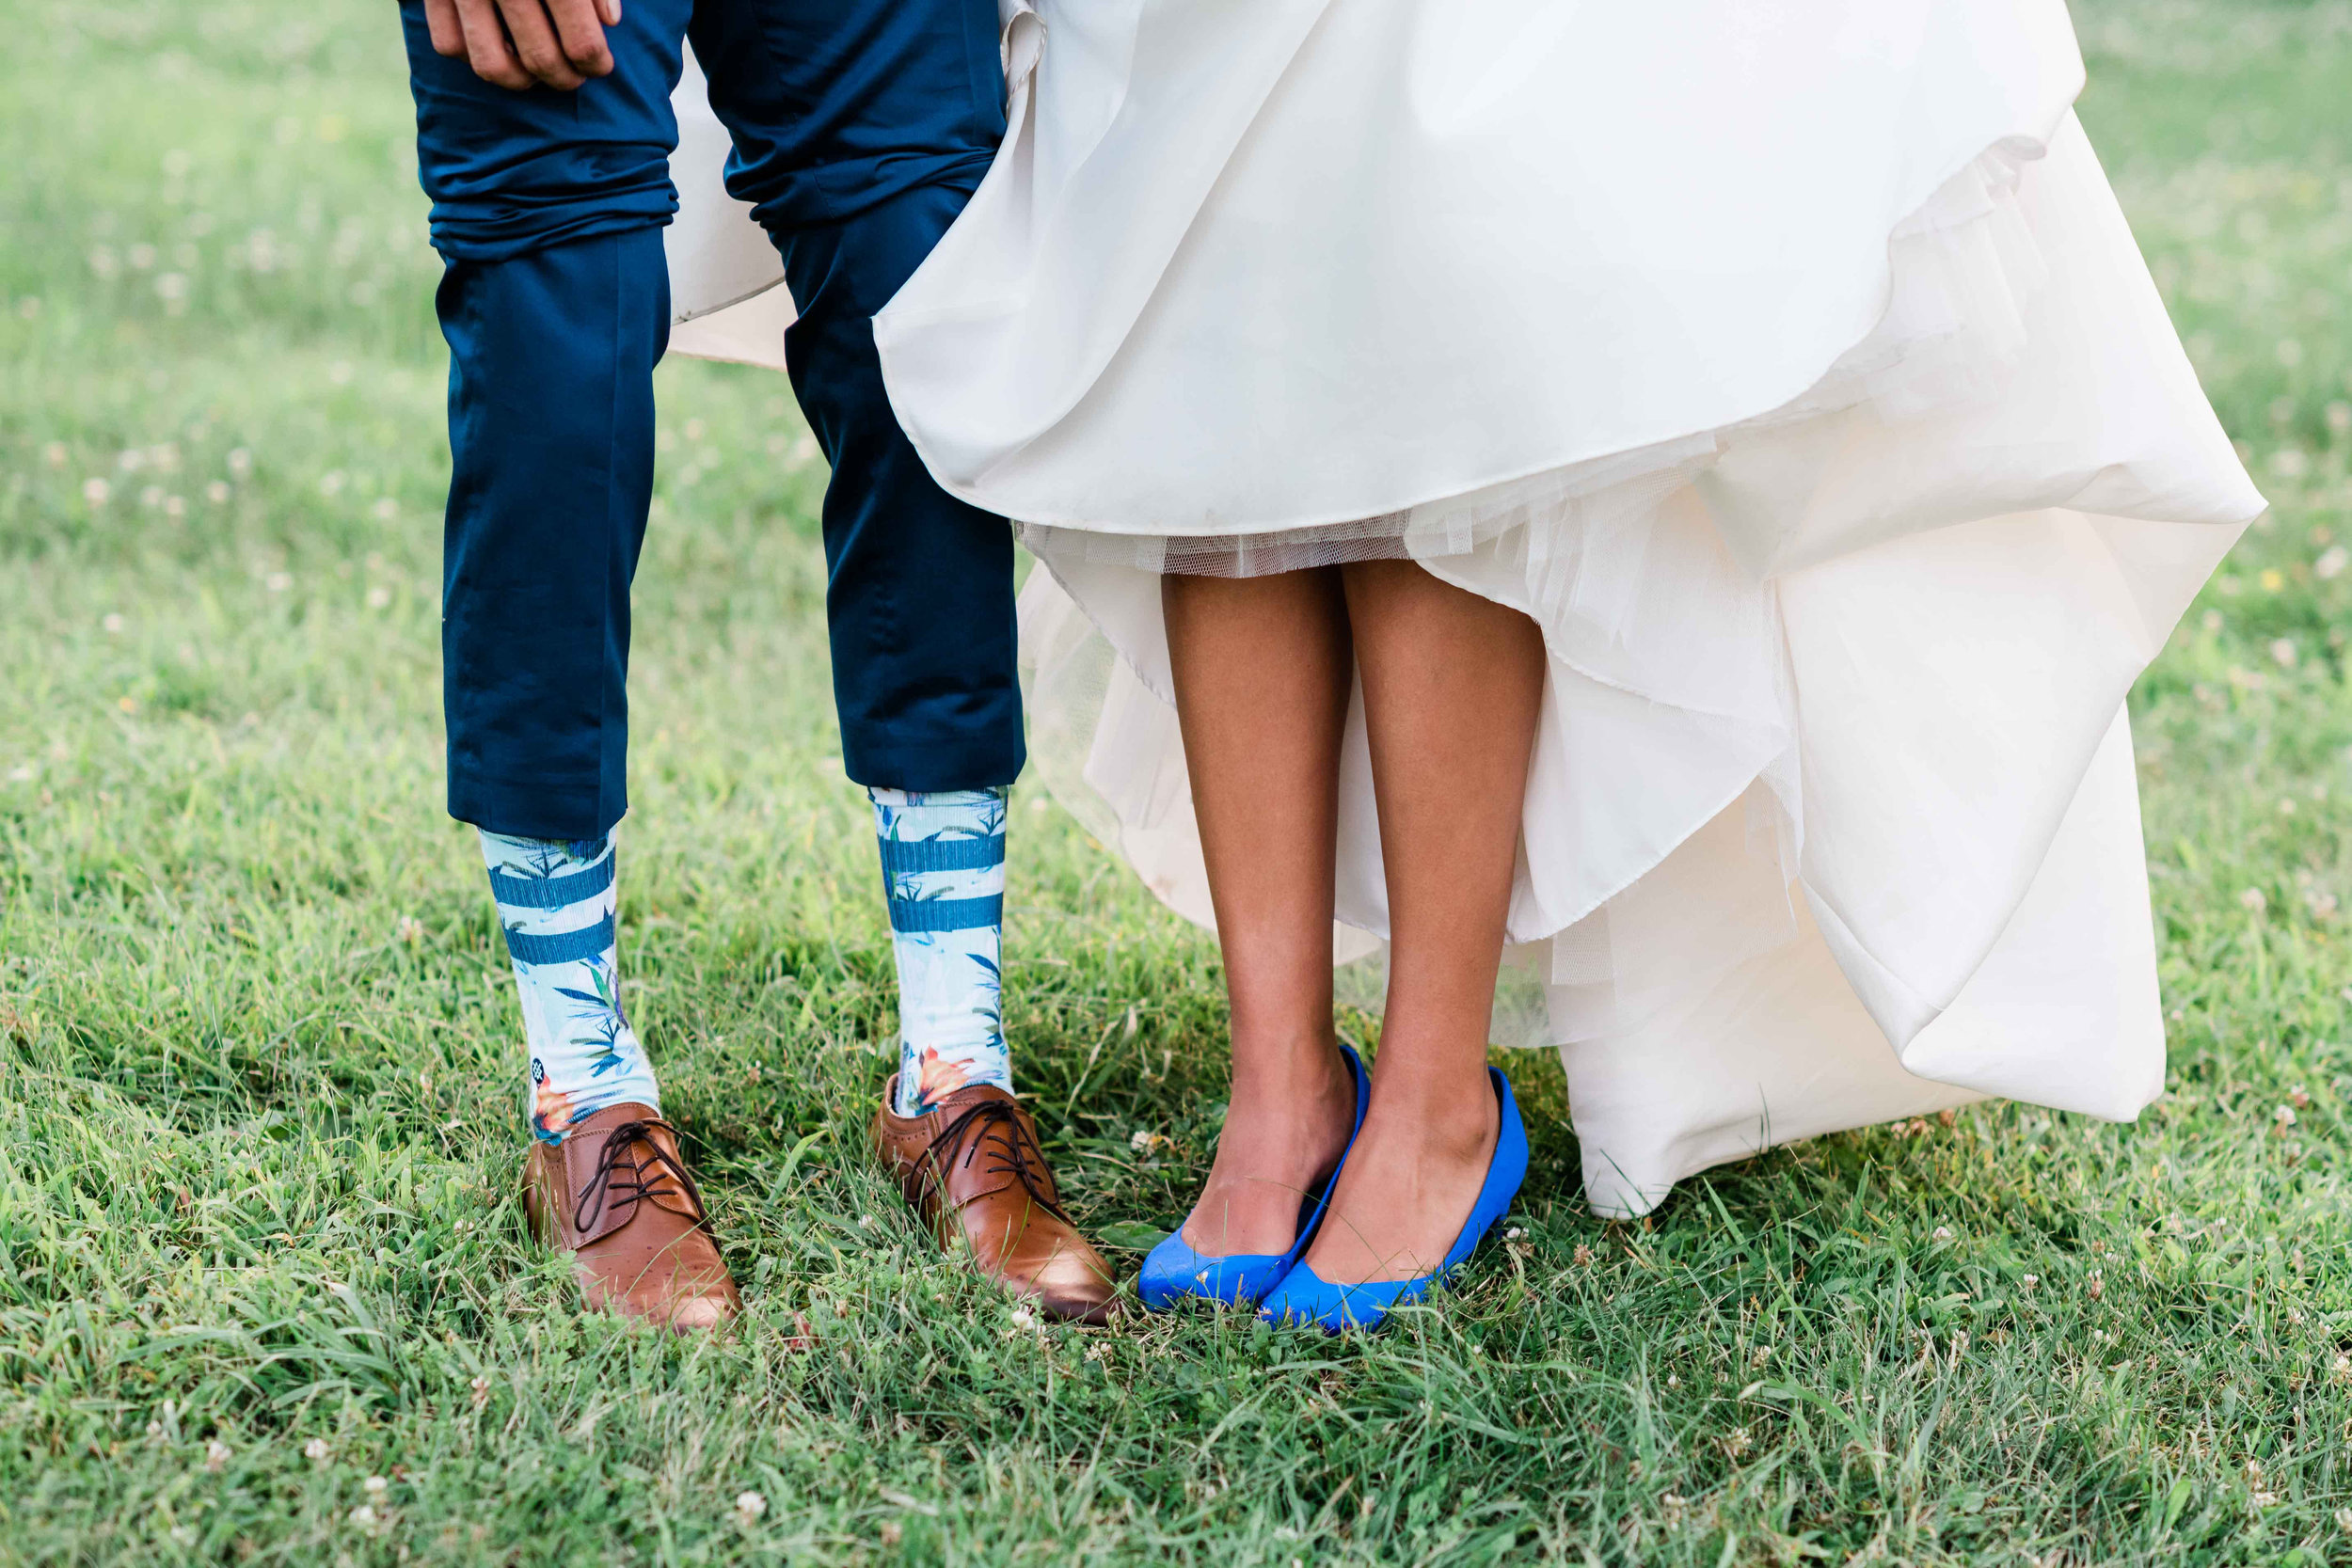 Bride and groom showing their footwear